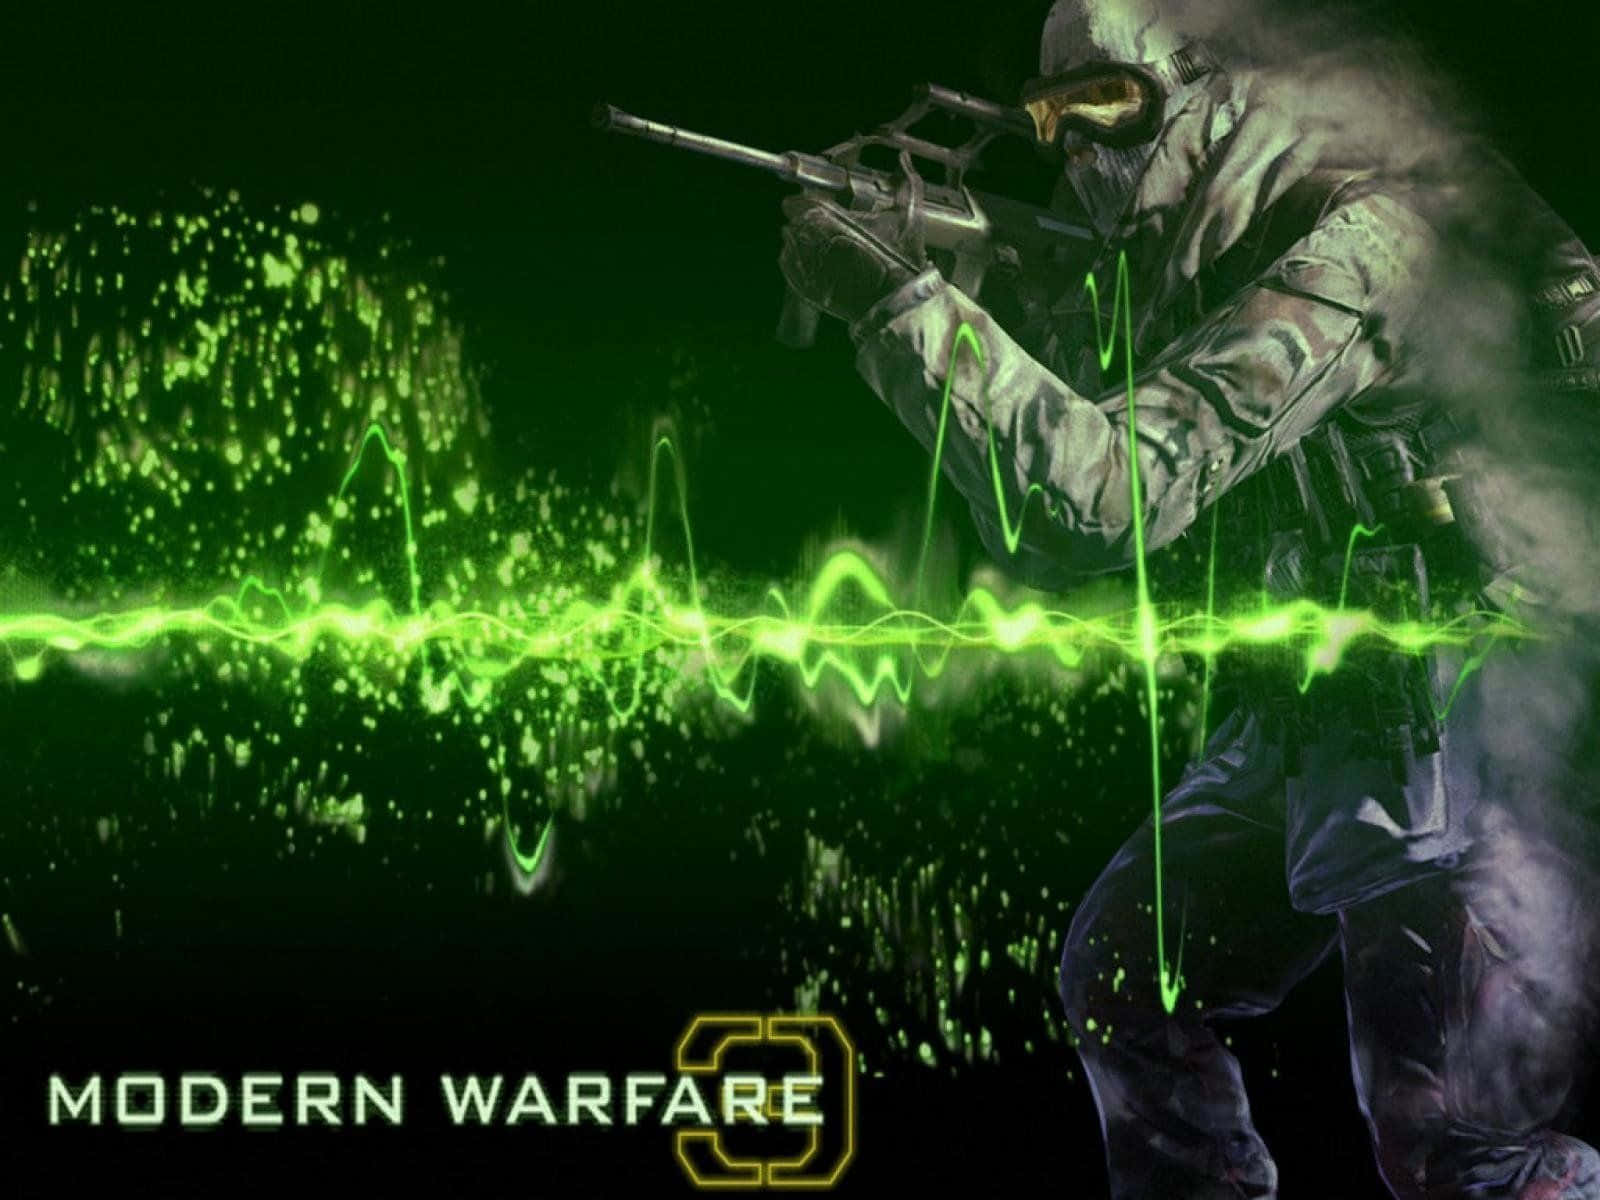 Take Aim and Prepare to Attack in Call of Duty Modern Warfare